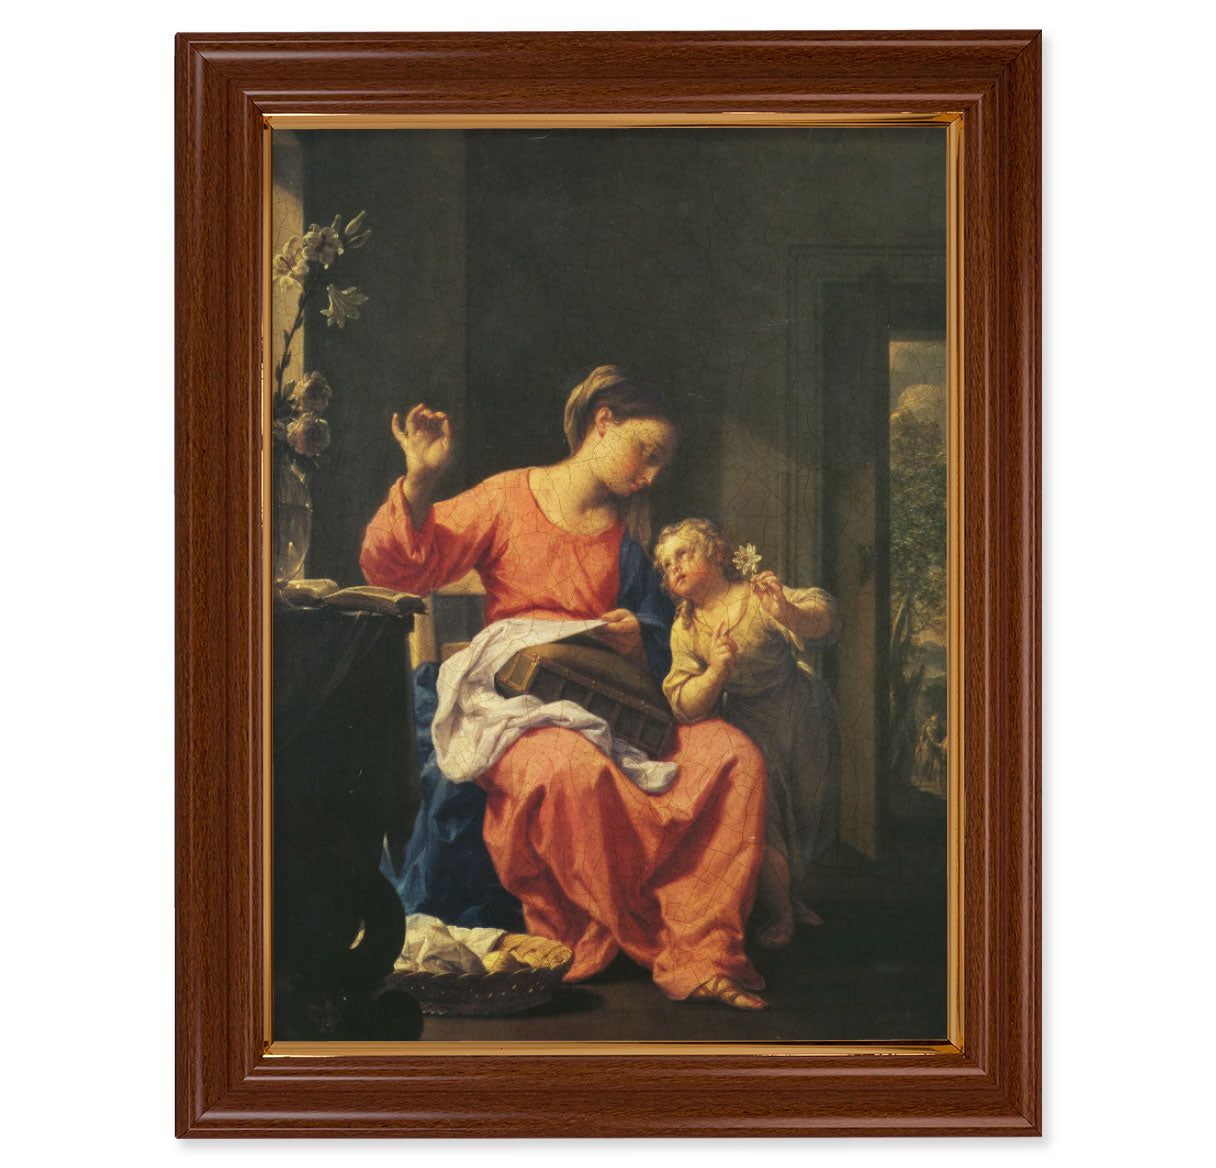 Jesus and Mary Walnut Finish Framed Art